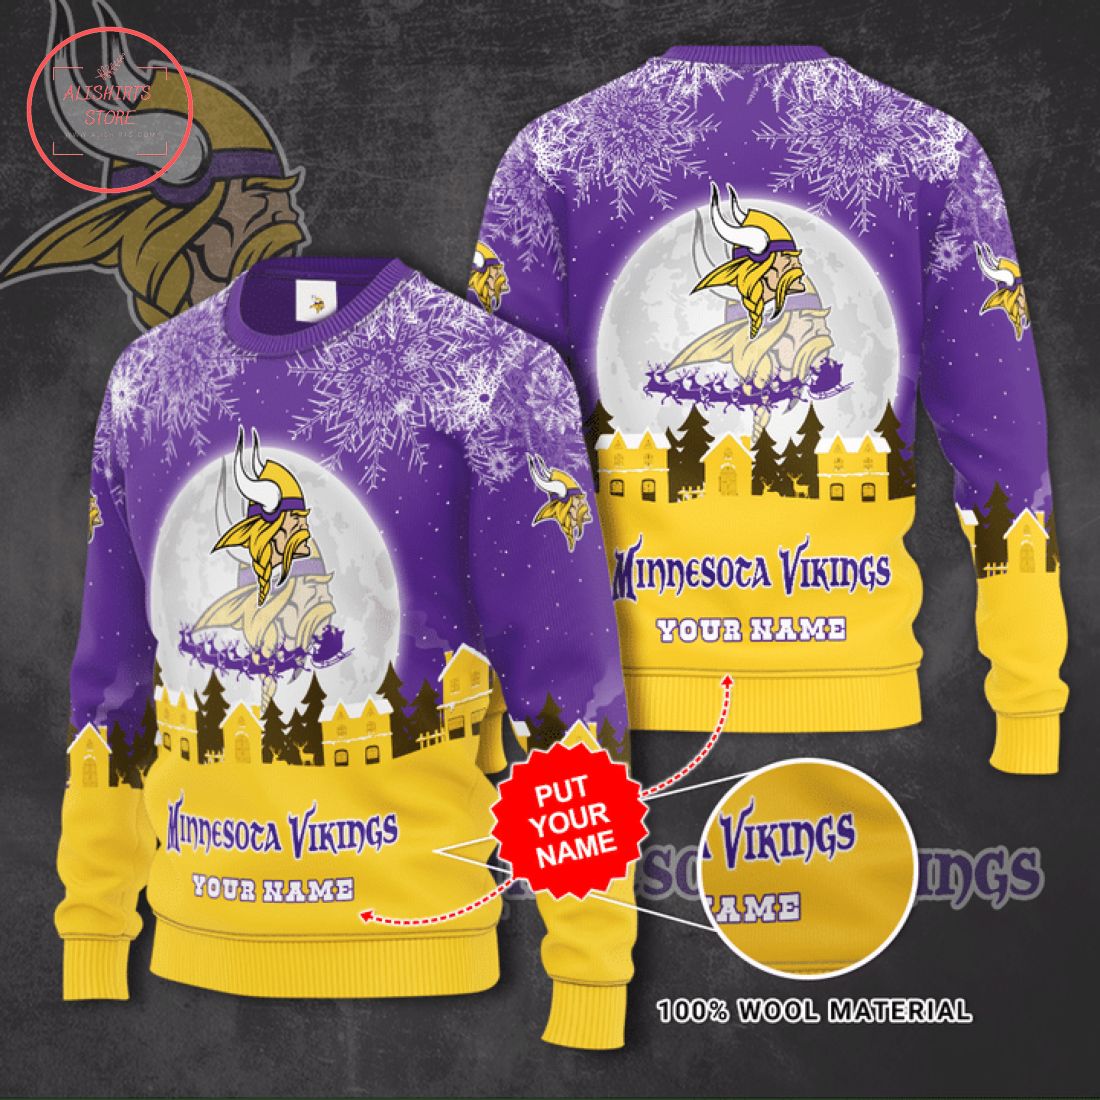 Minnesota Vikings Personalized Ugly Christmas Sweater